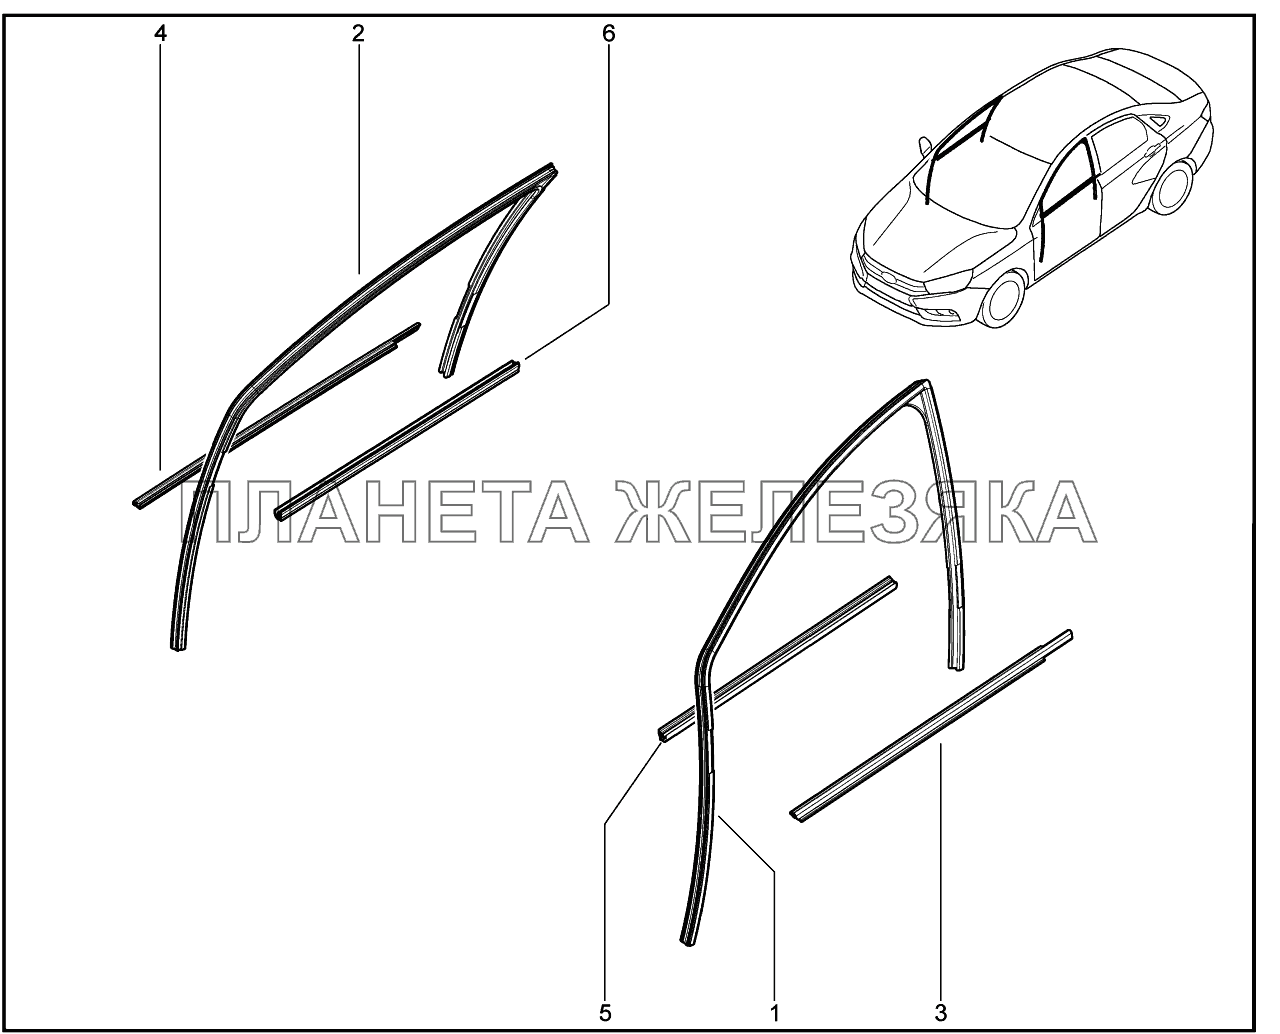 660110. Направляющие передних стёкол Lada Vesta